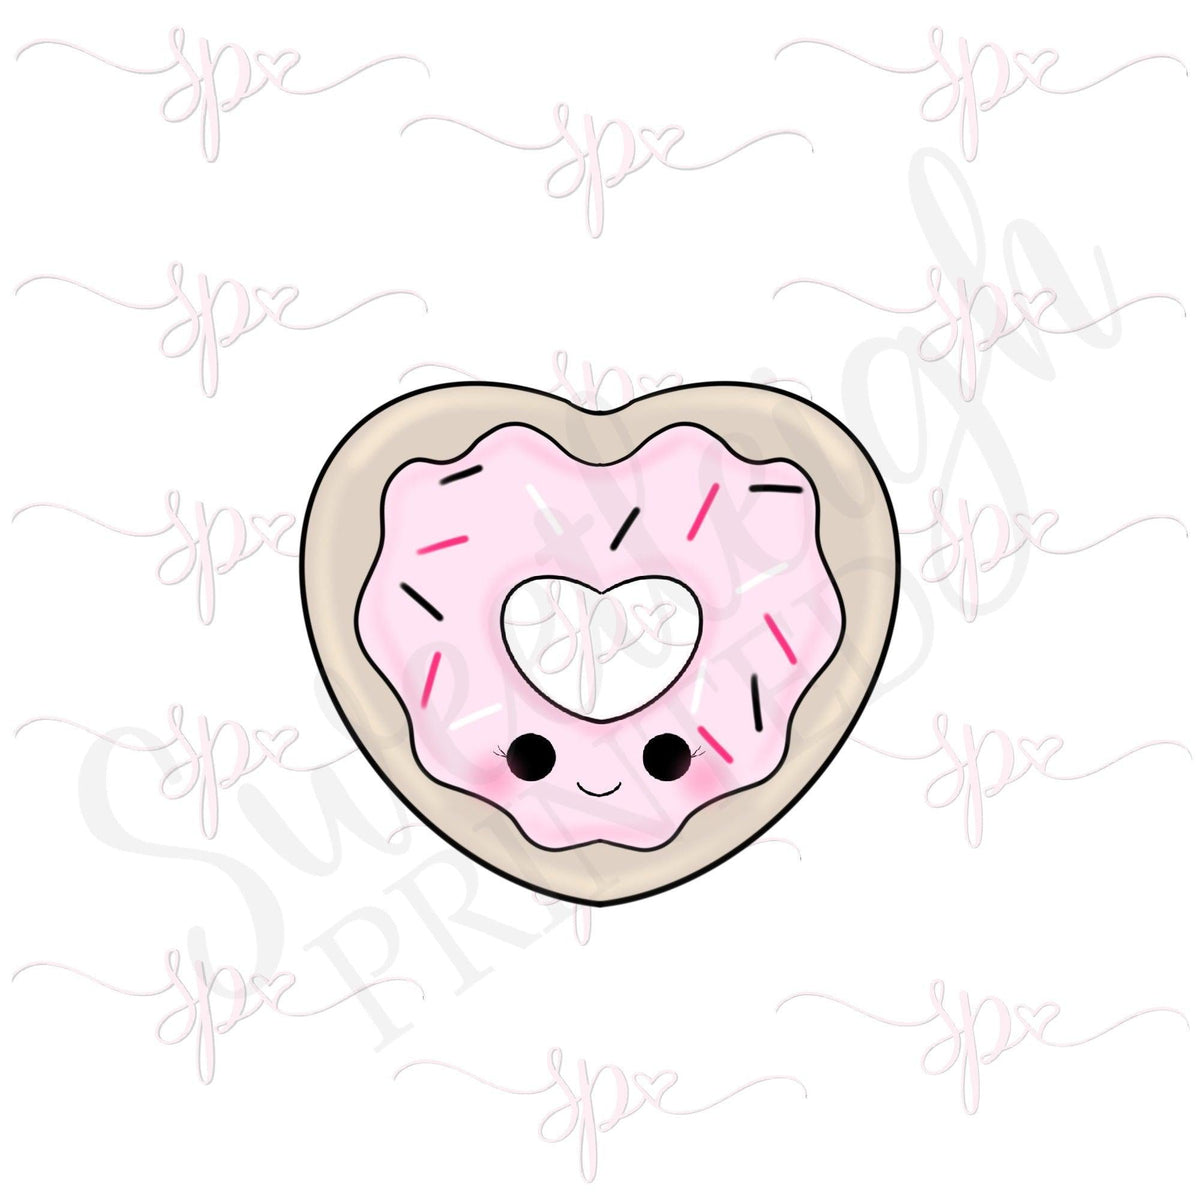 Donut Heart 2020 Cookie Cutter - Sweetleigh 